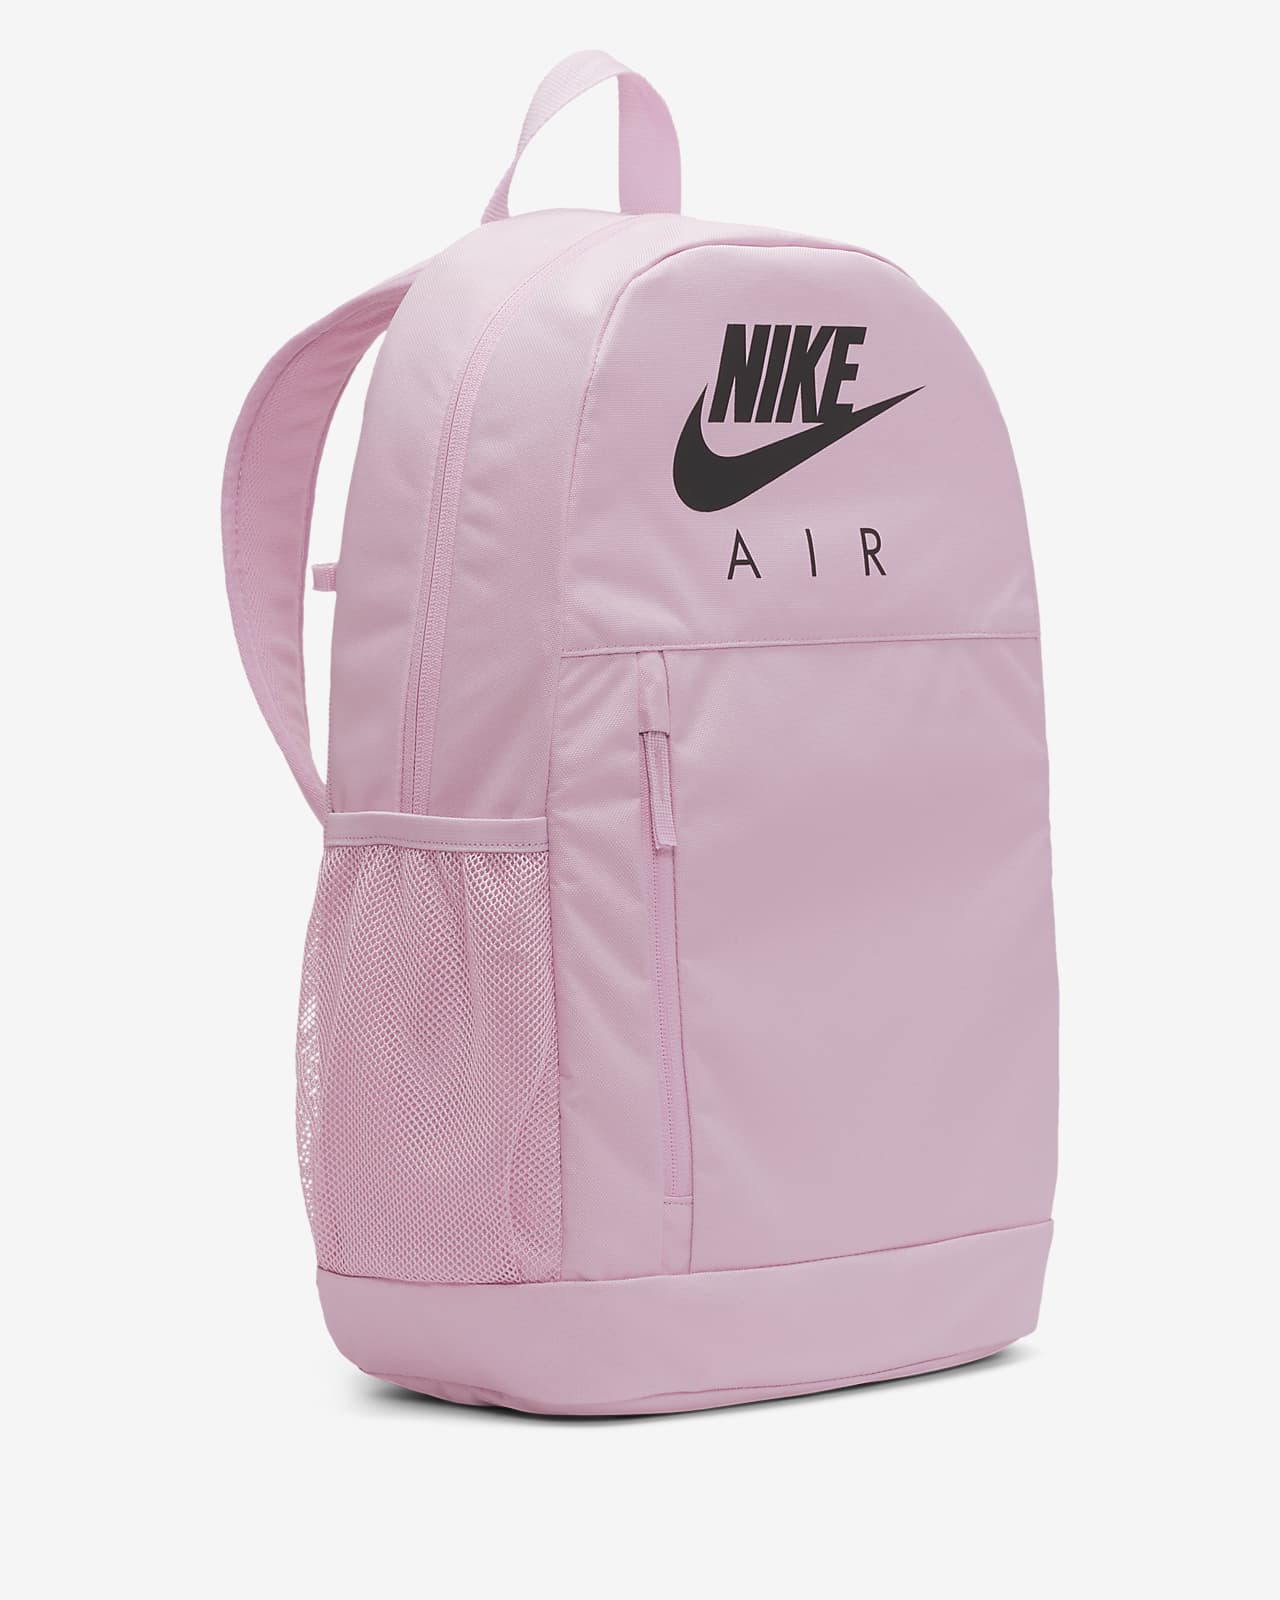 nike air bag pink